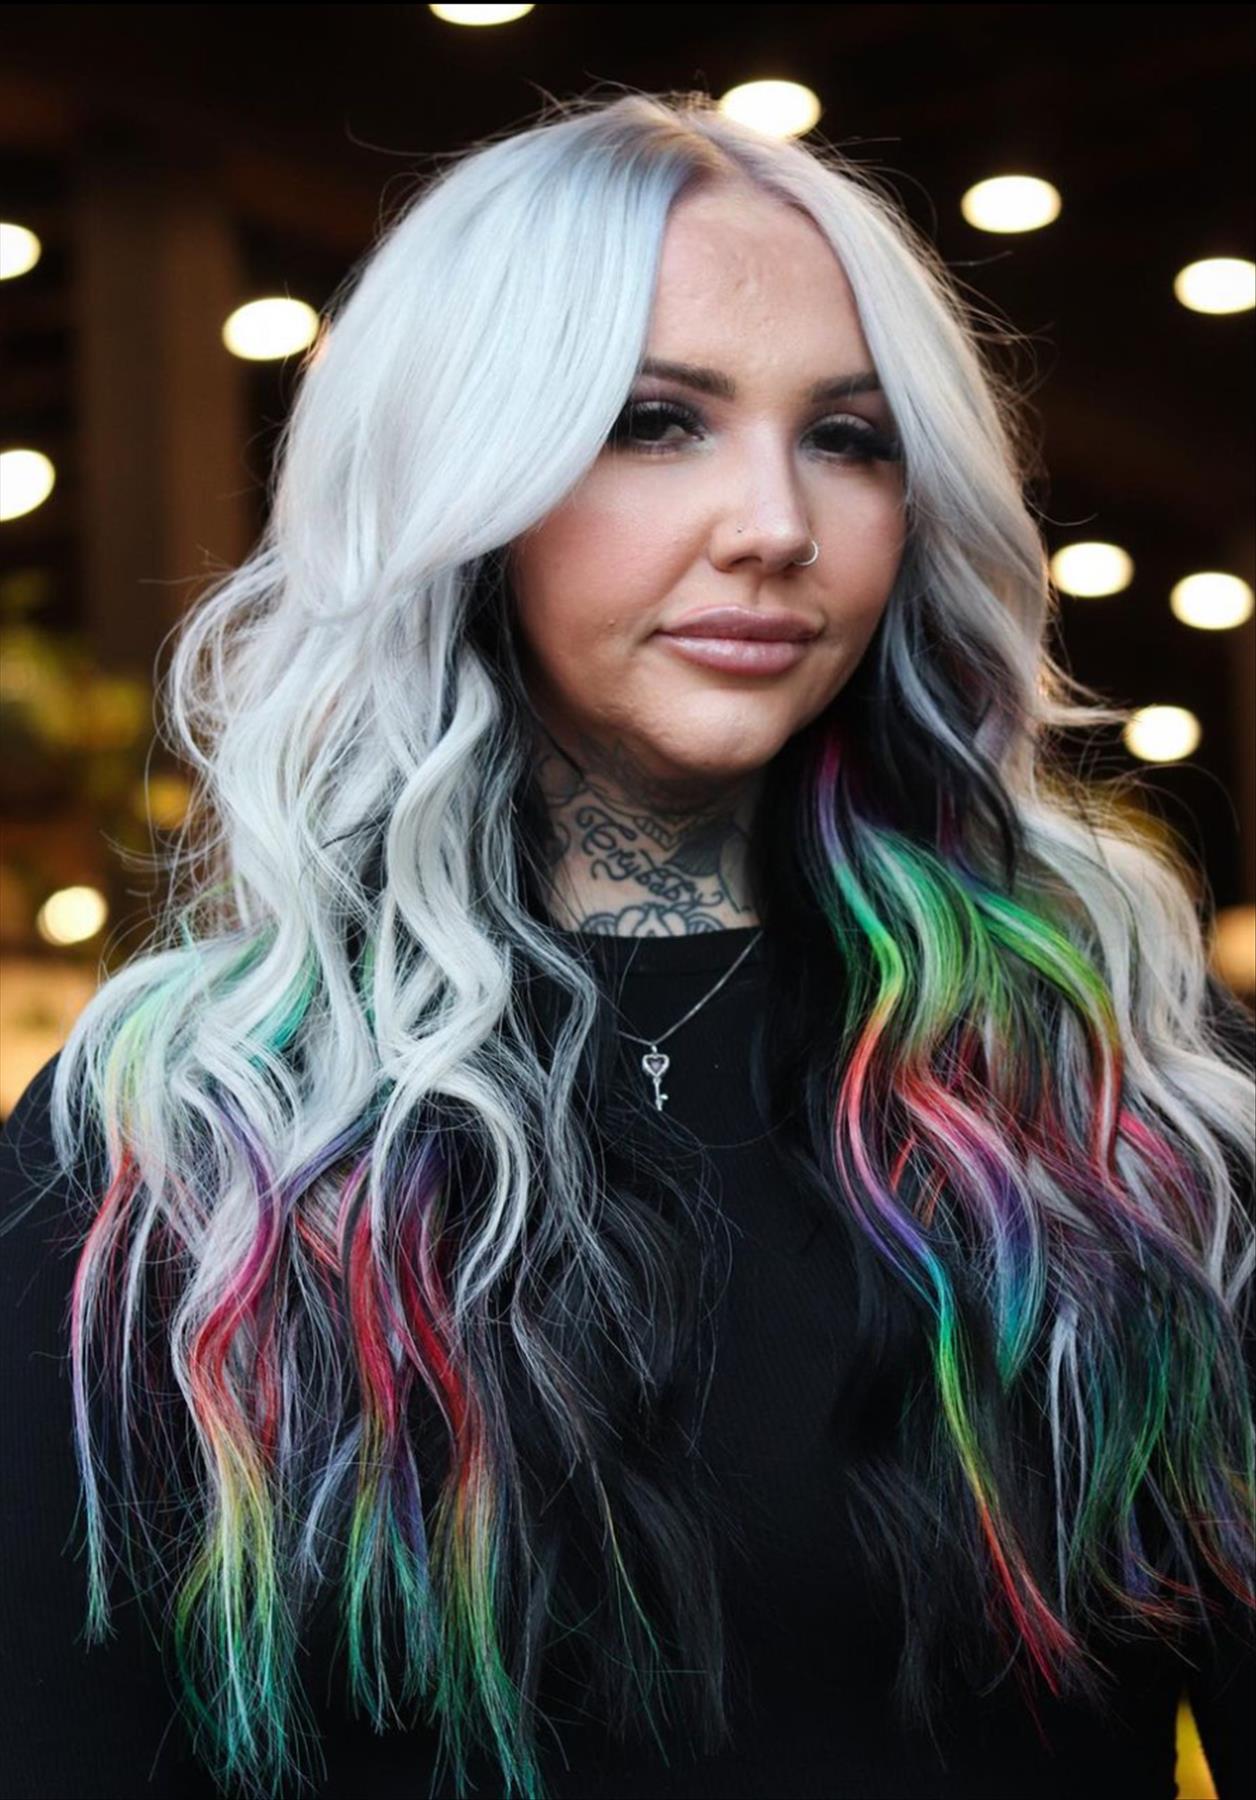 Winter hair color & hair dye ideas to wear in 2022